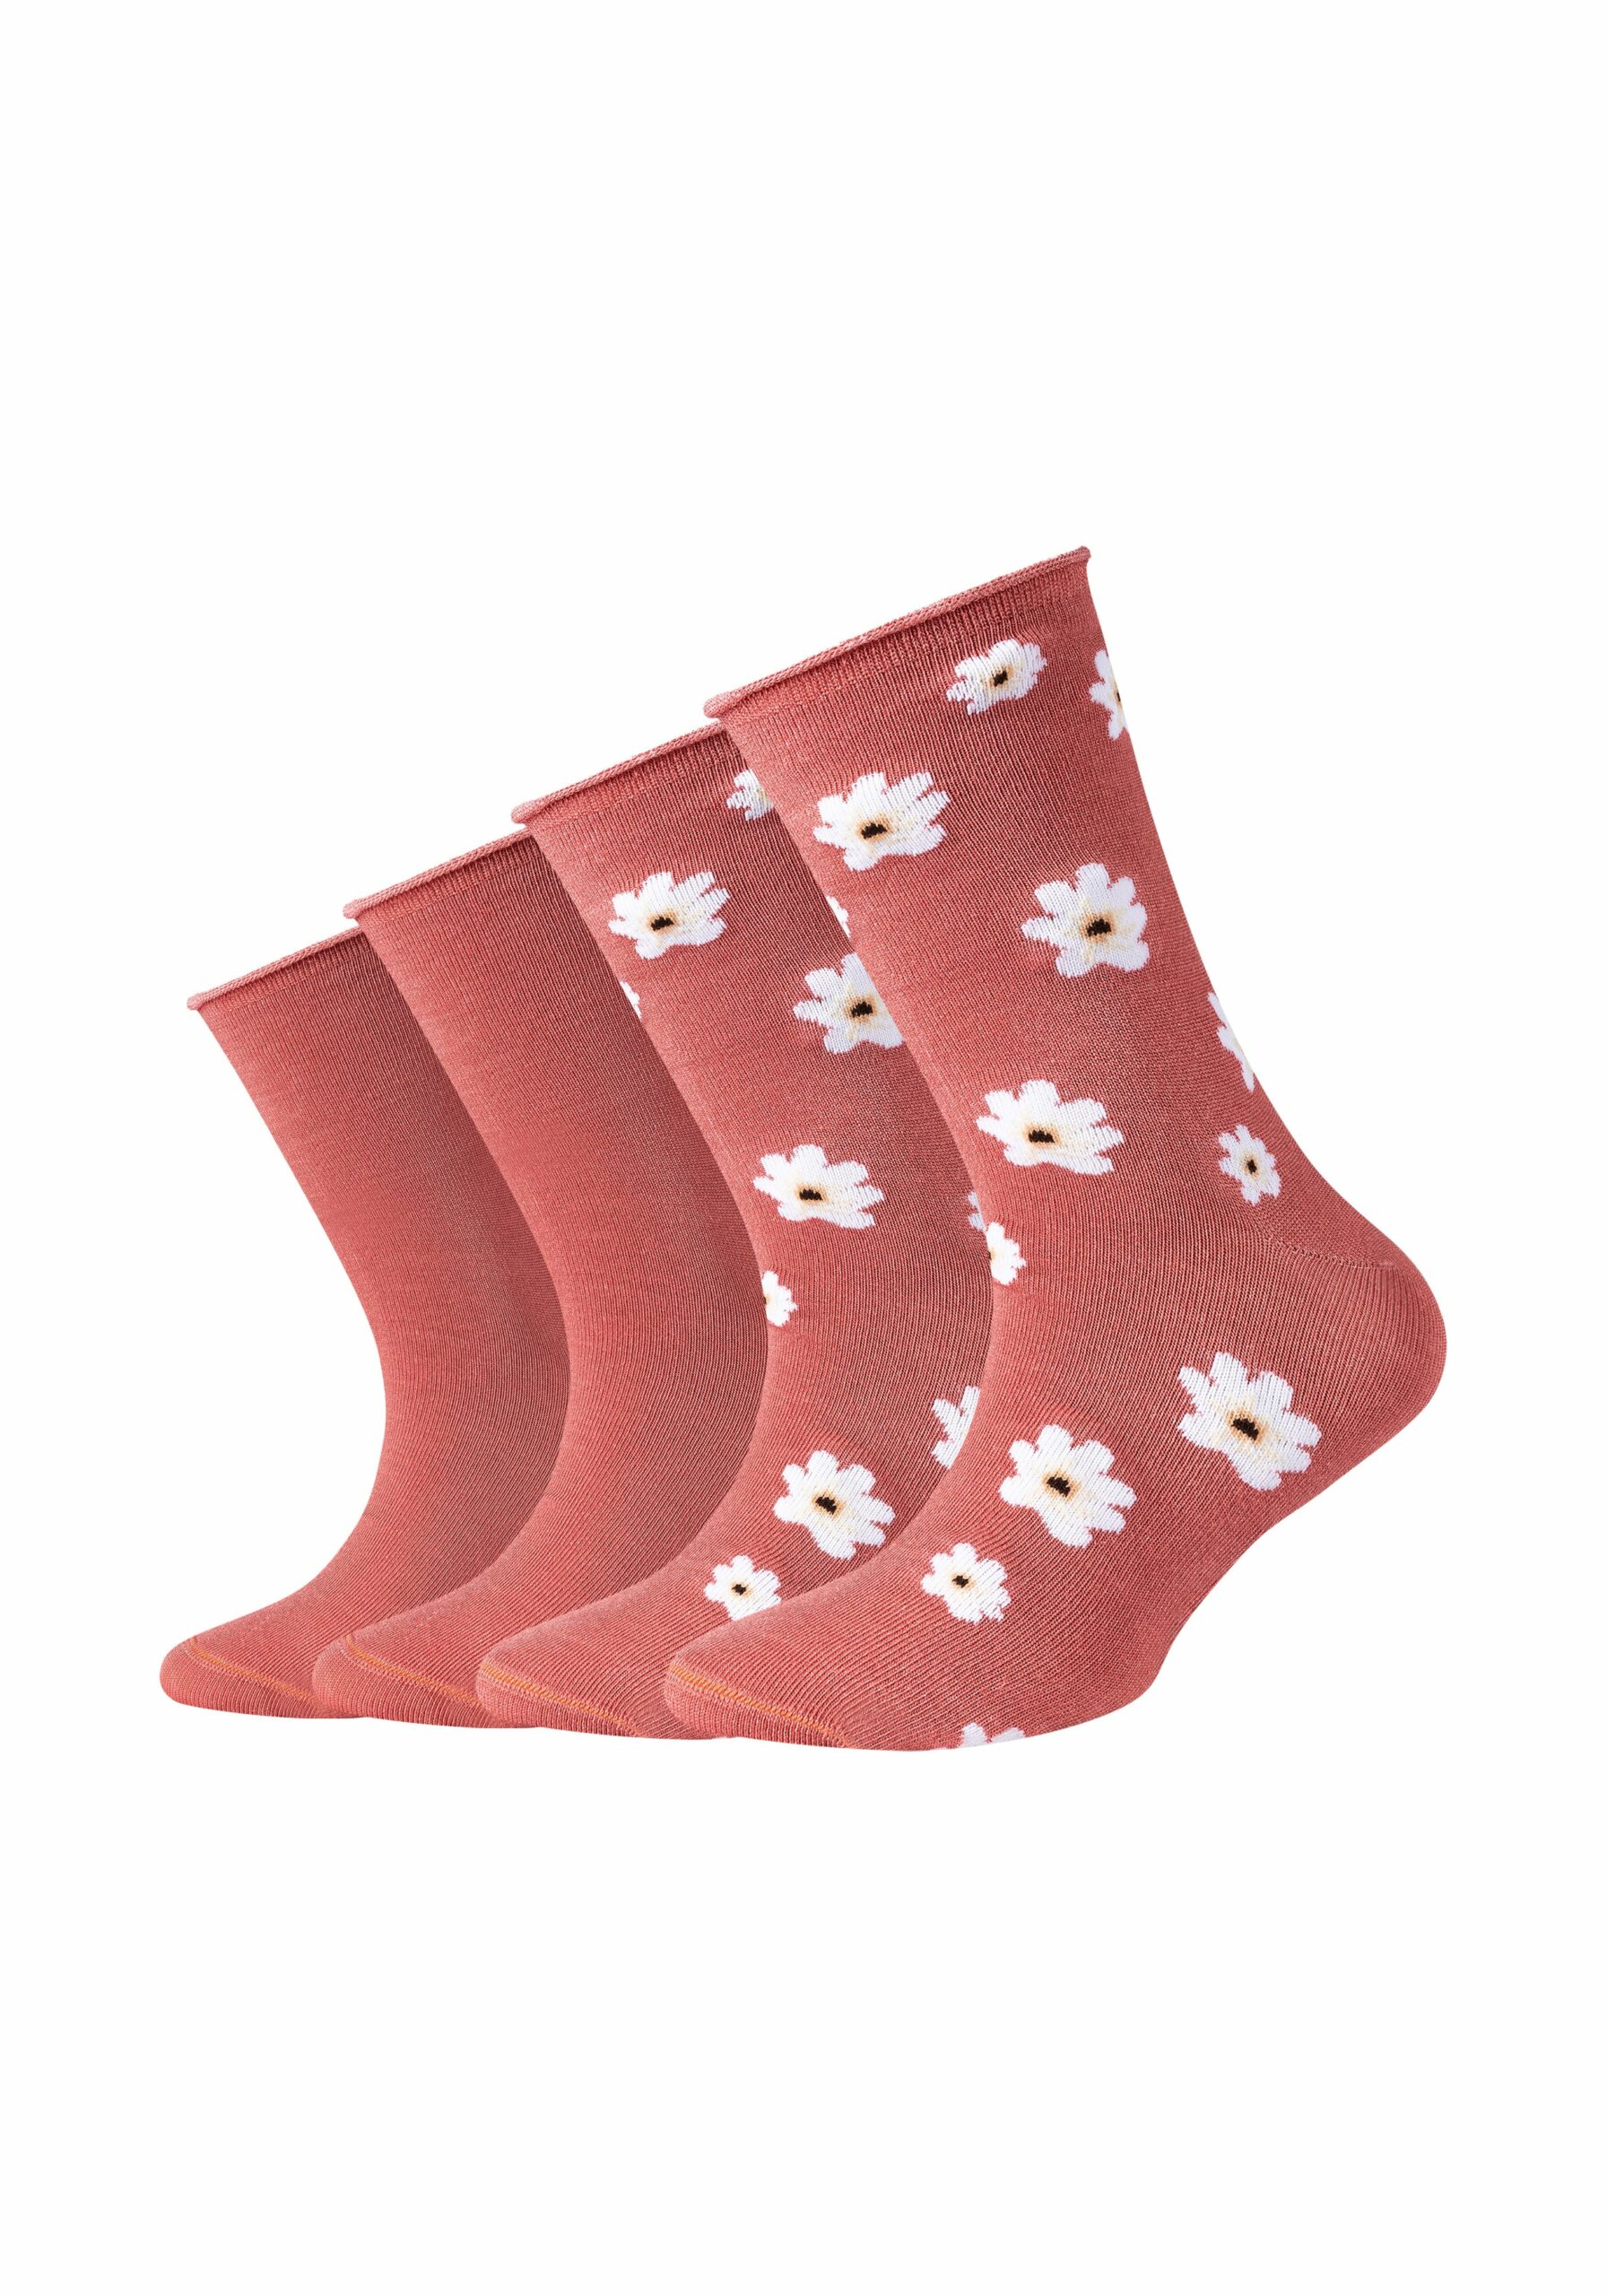 s.Oliver Kinder Socken Silky Touch Flower 4er Pack faded rose